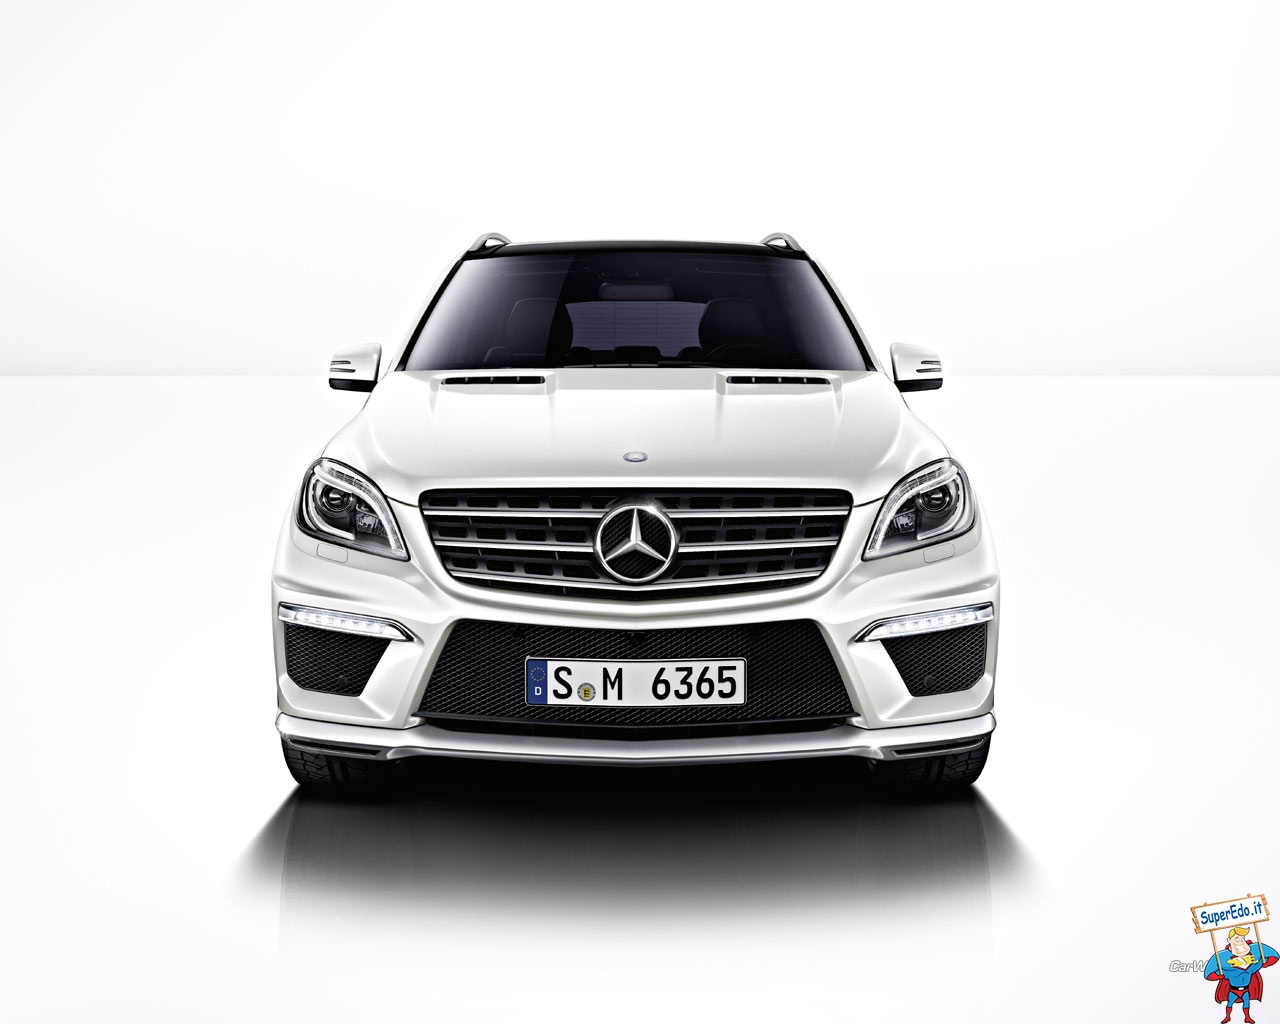 Mercedes Amg - Front Of Mercedes Benz - HD Wallpaper 